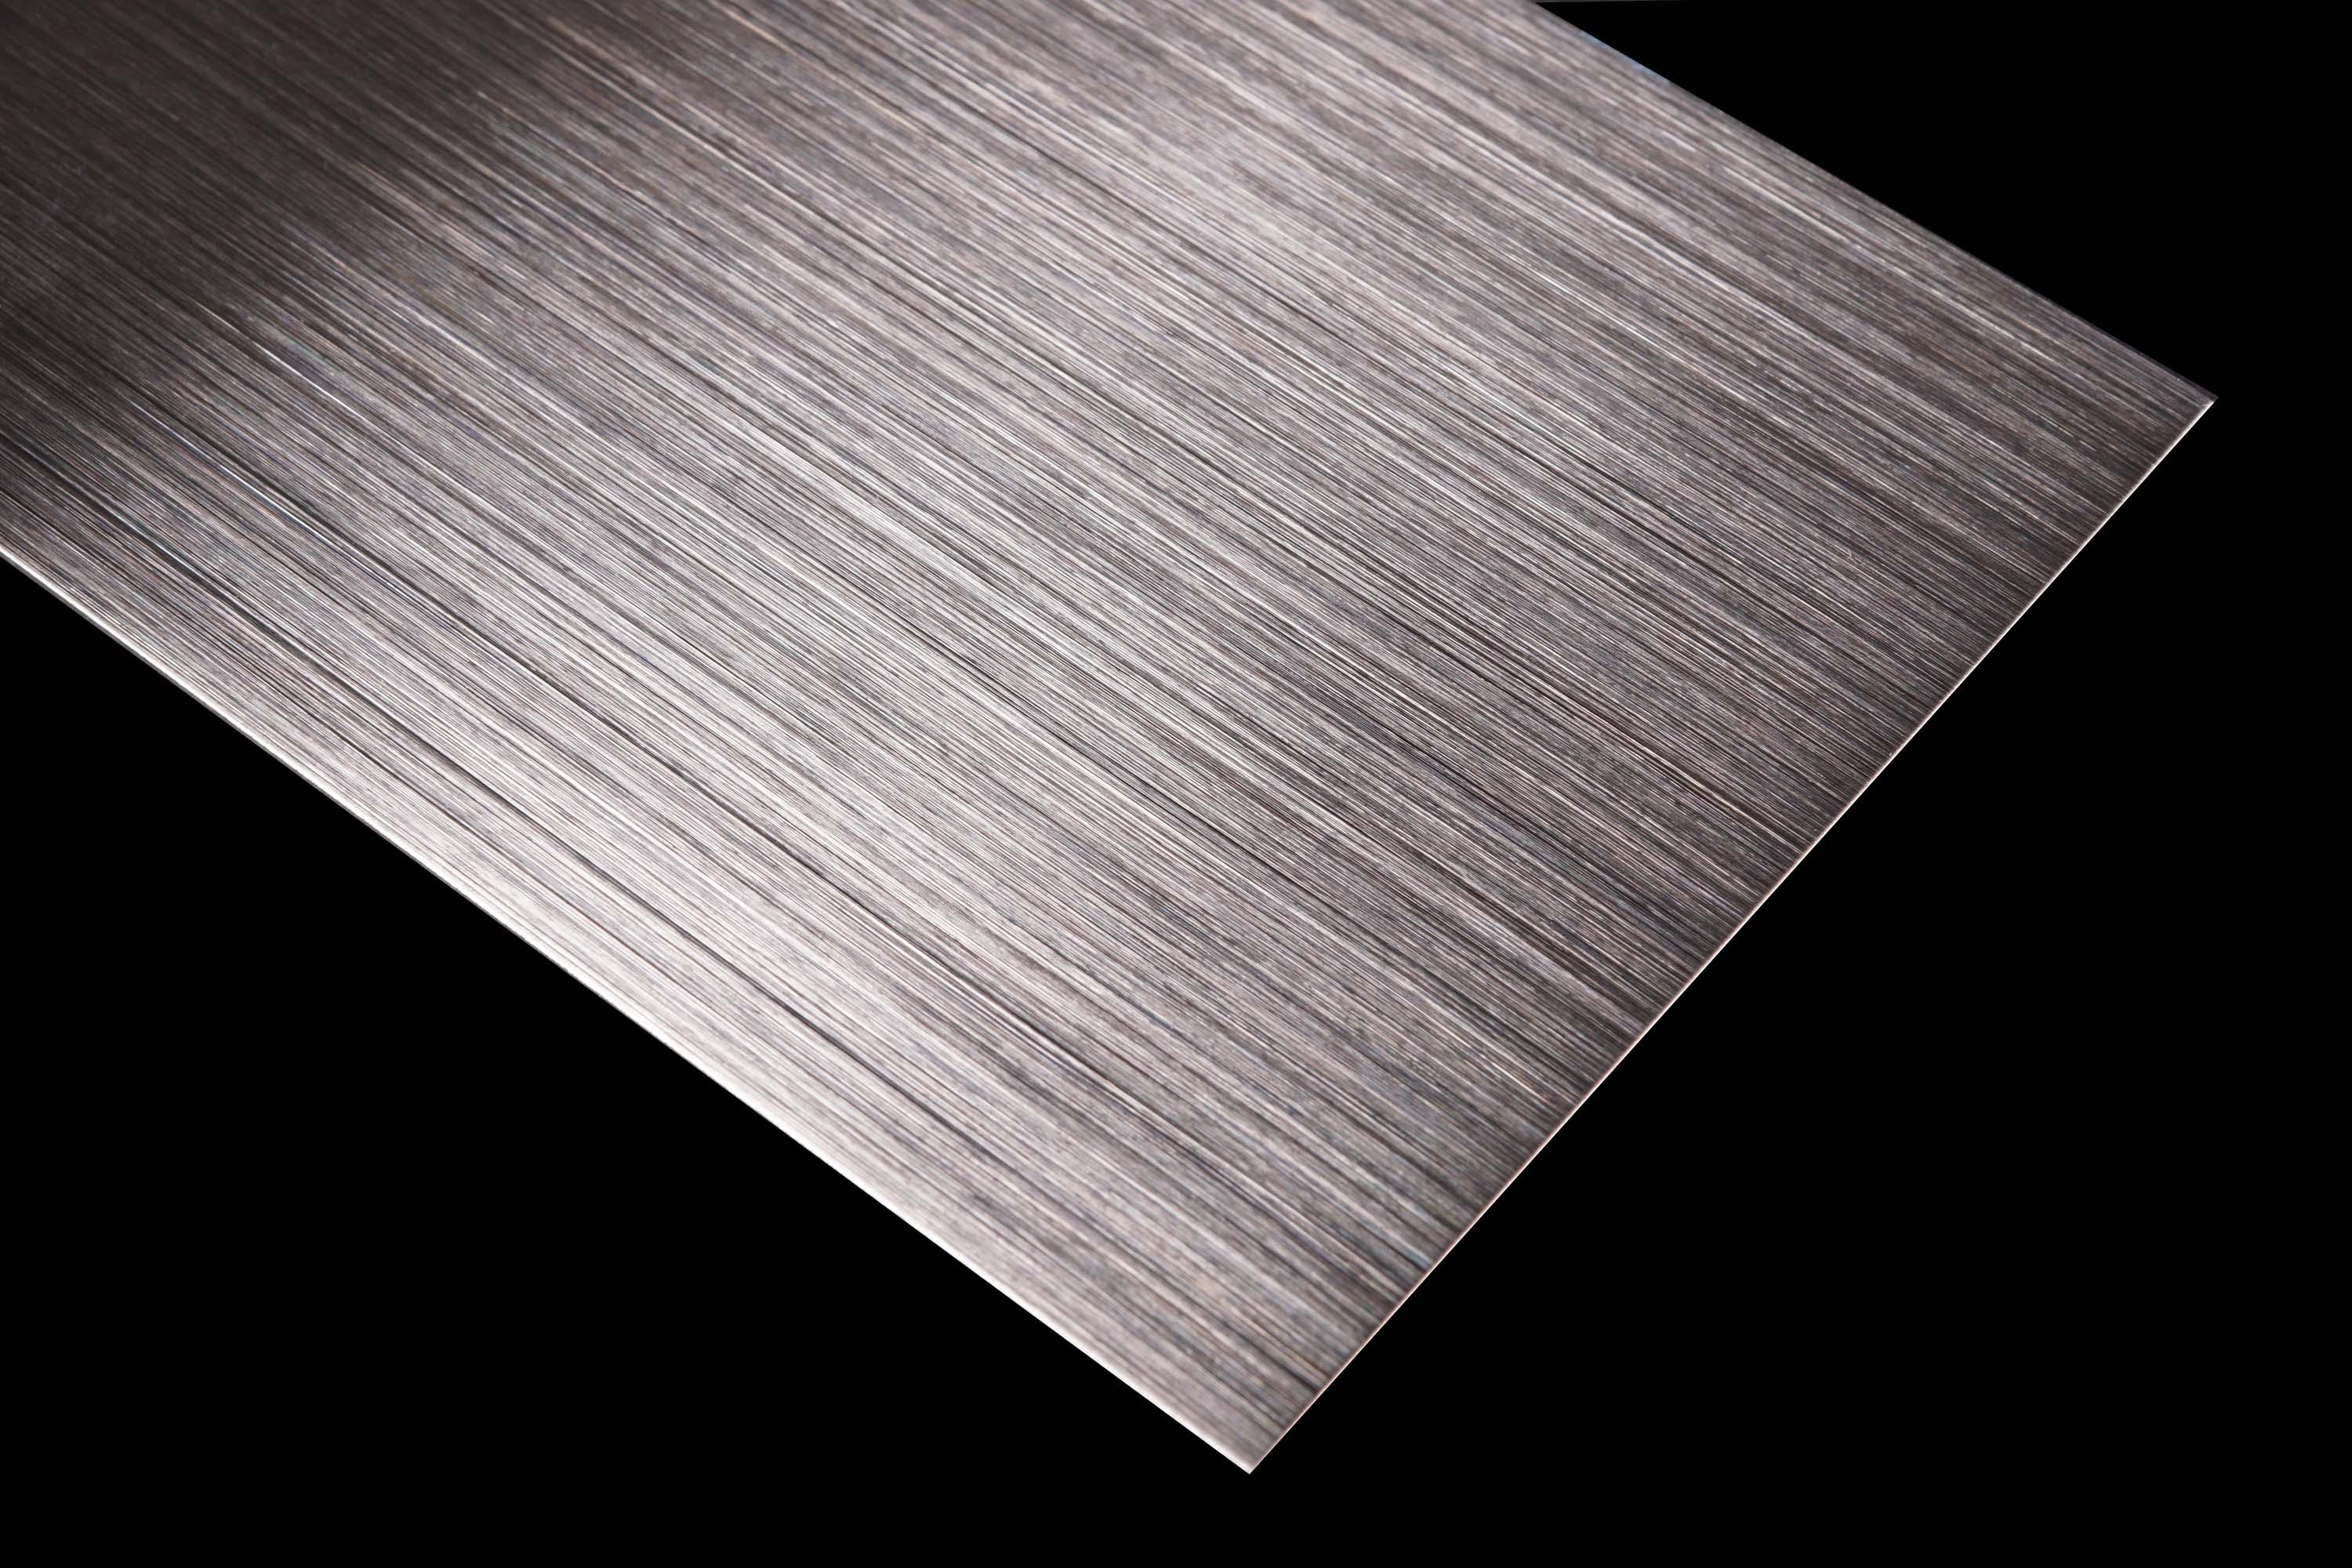 Soeverein Voorrecht geluk Stainless Steel | 620 | Hairline abrasive | Architonic